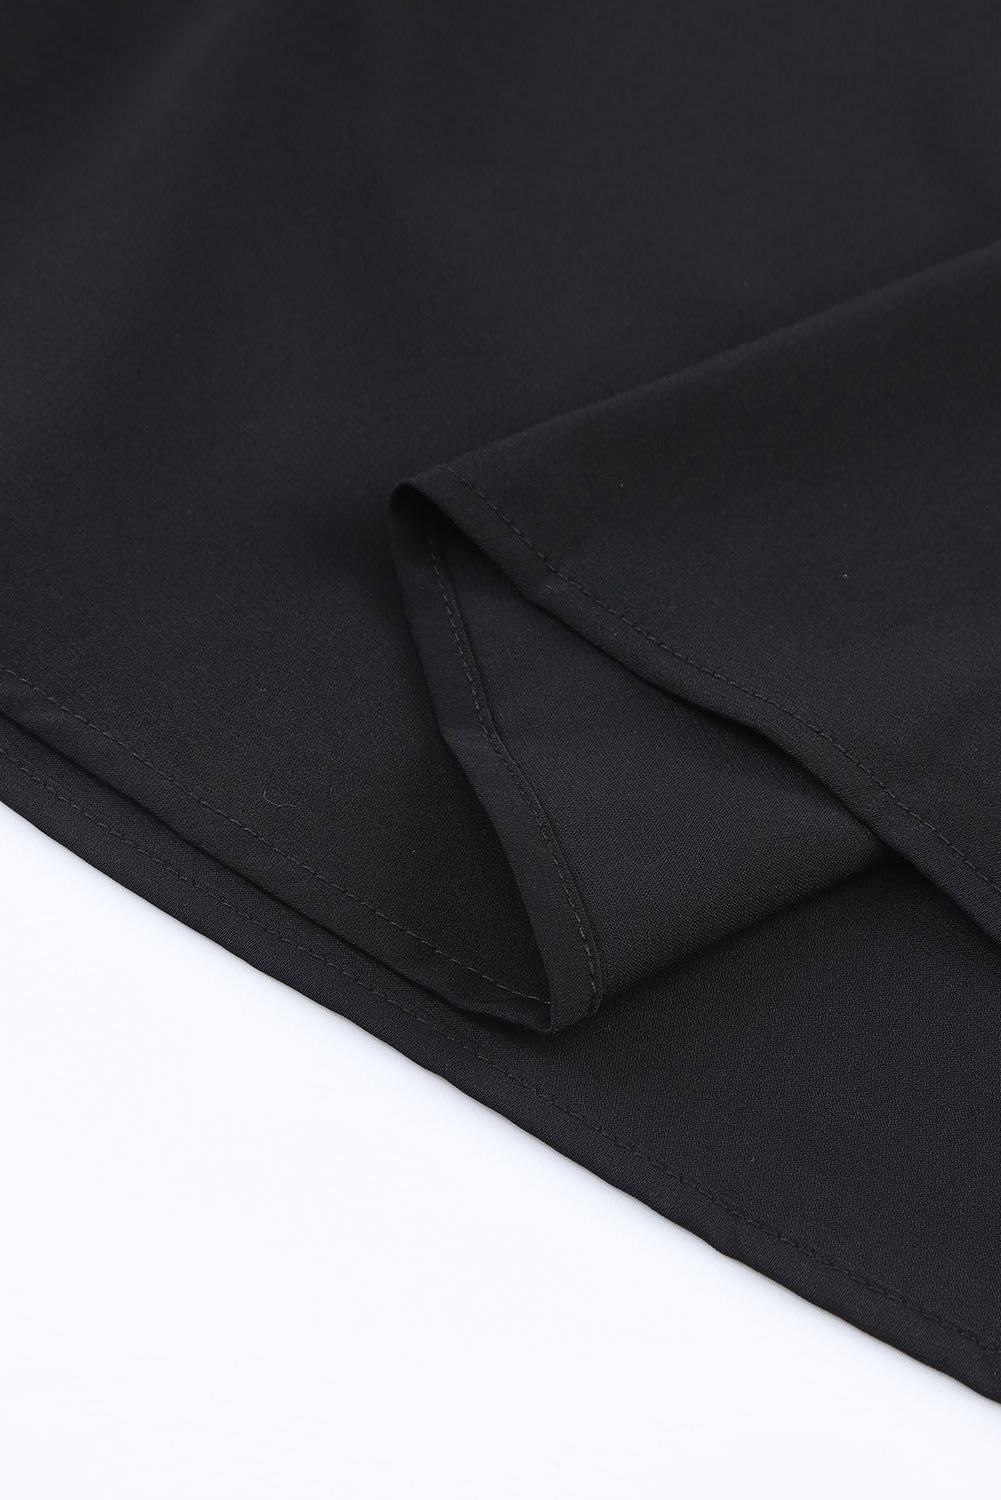 Schwarze geknotete asymmetrische schulterfreie Bluse